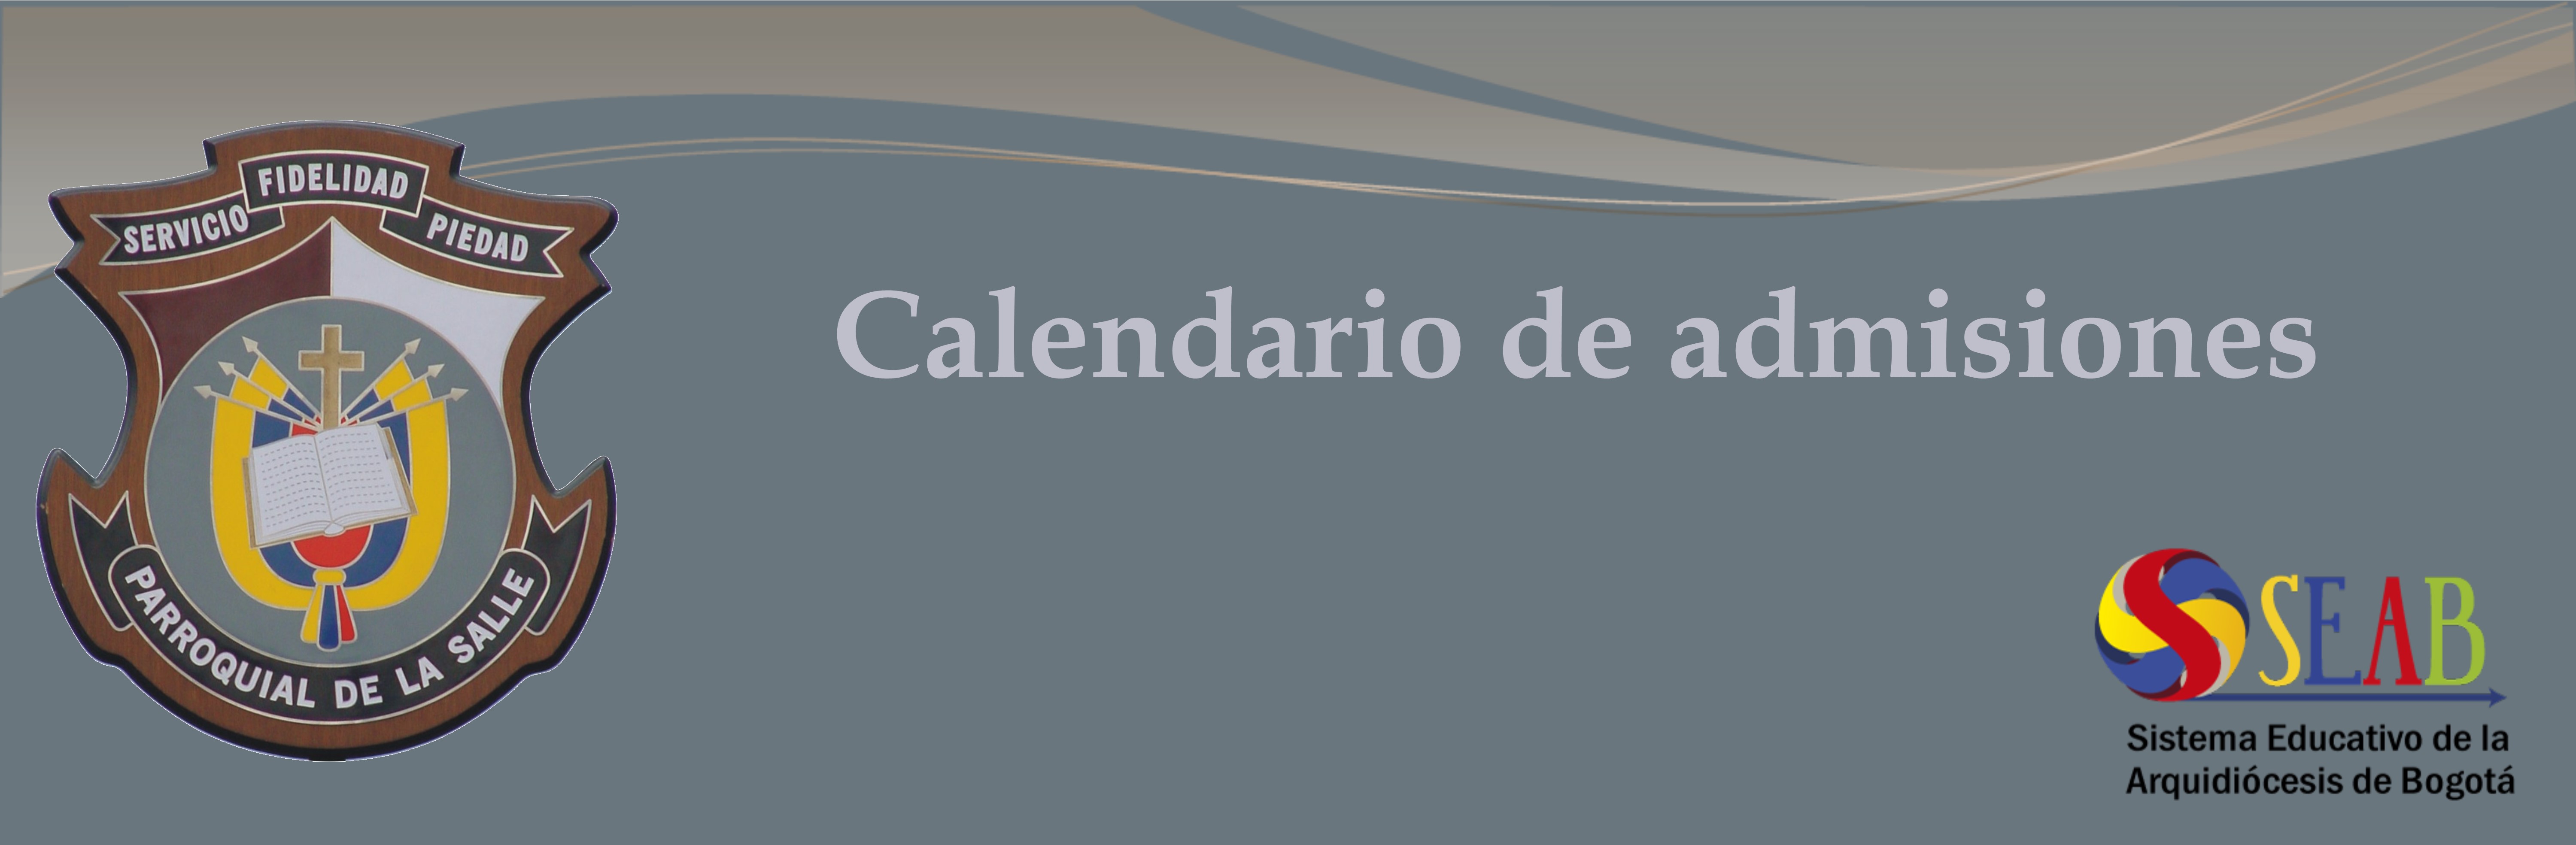 https://arquimedia.s3.amazonaws.com/379/utilitarias/banner-calendario-de-admisionesjpg.jpg